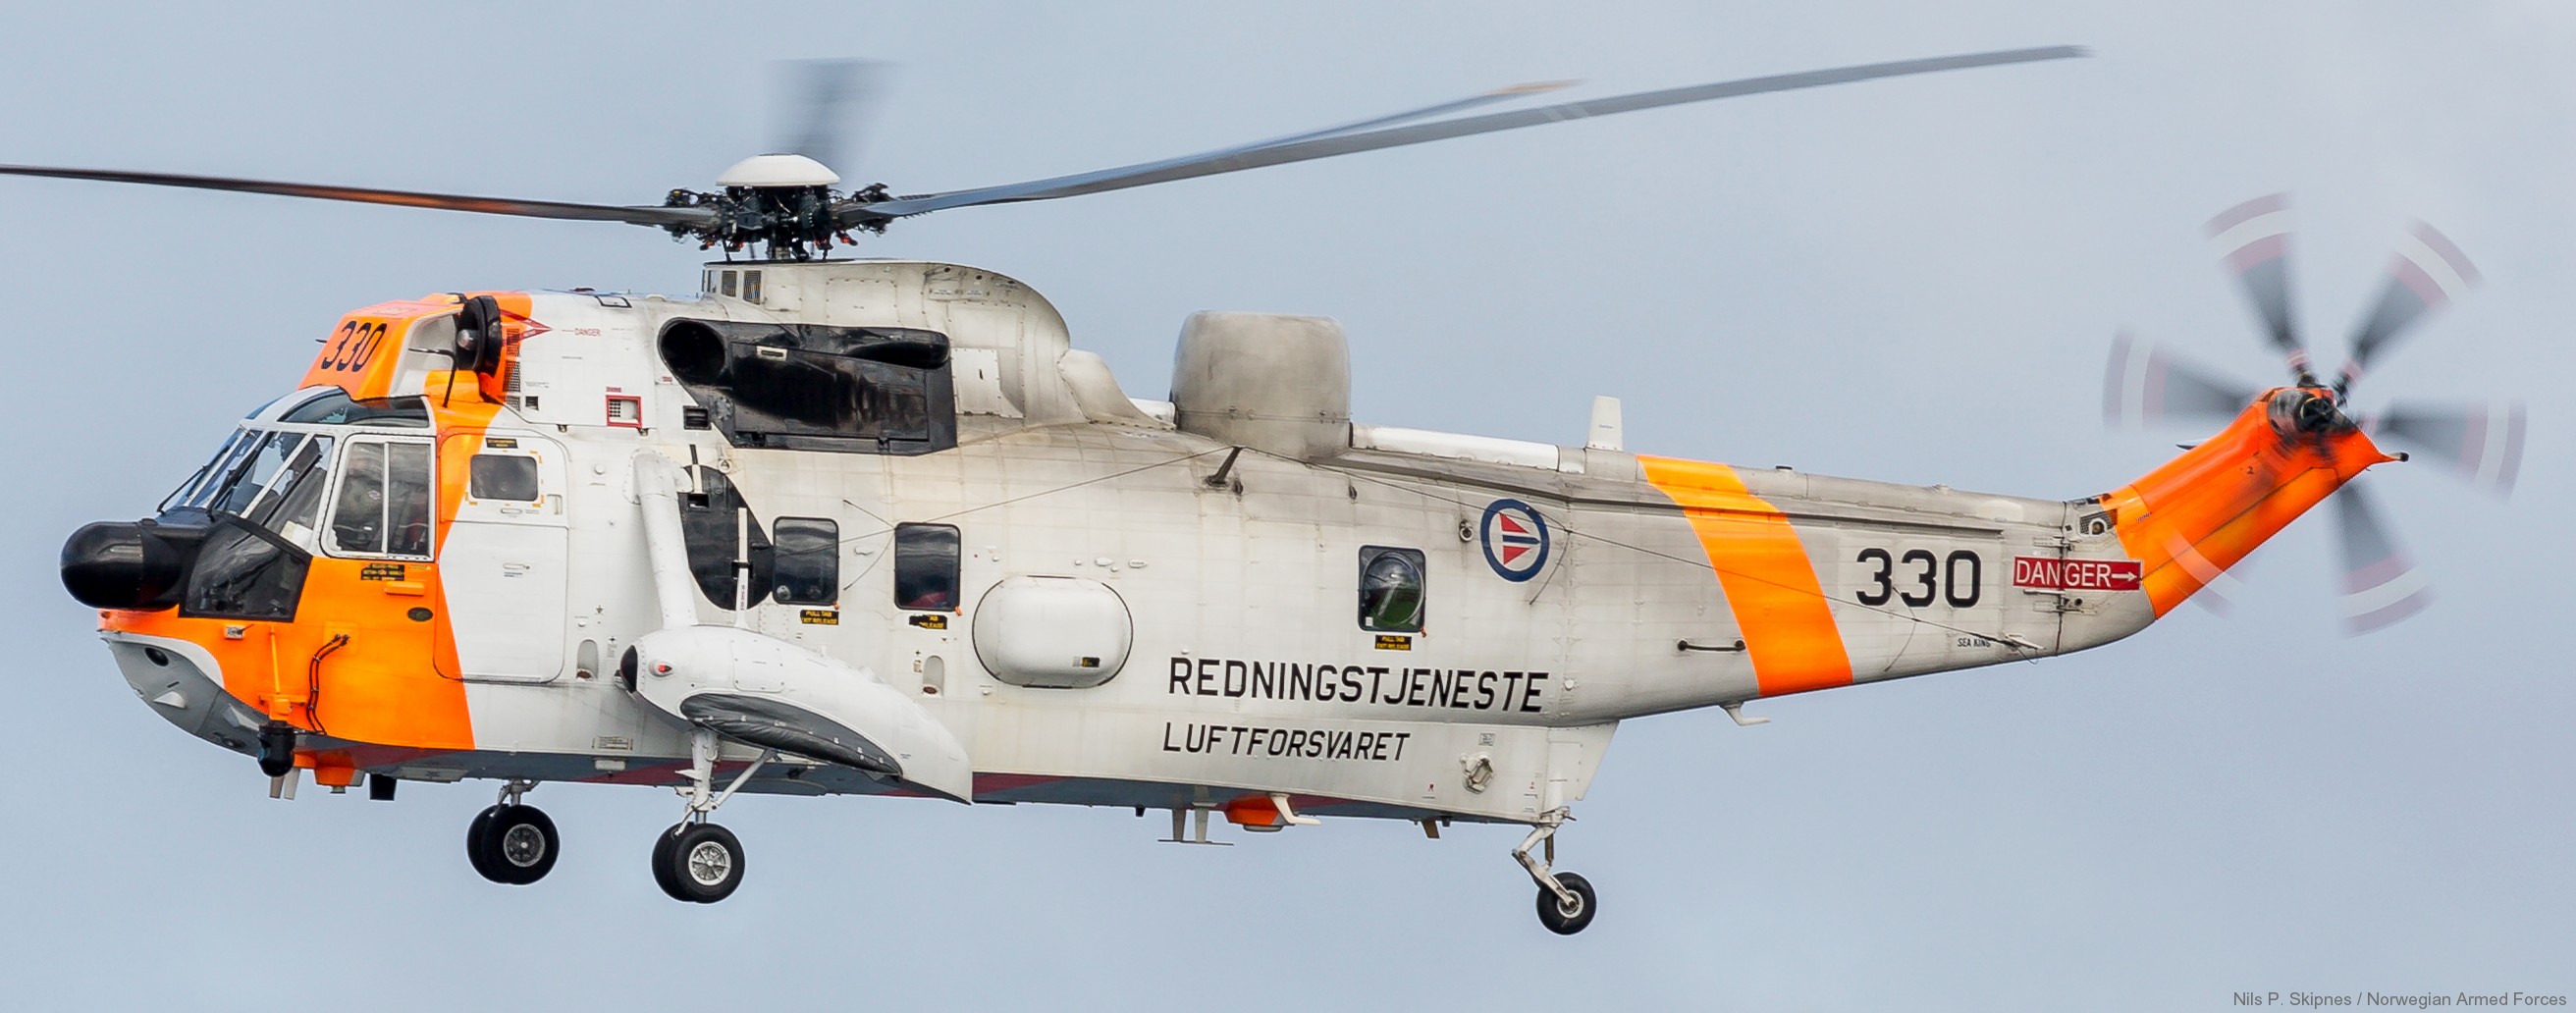 westland ws-61 sea king royal norwegian air force sar rescue 330 squadron skvadron luftforsvaret 05